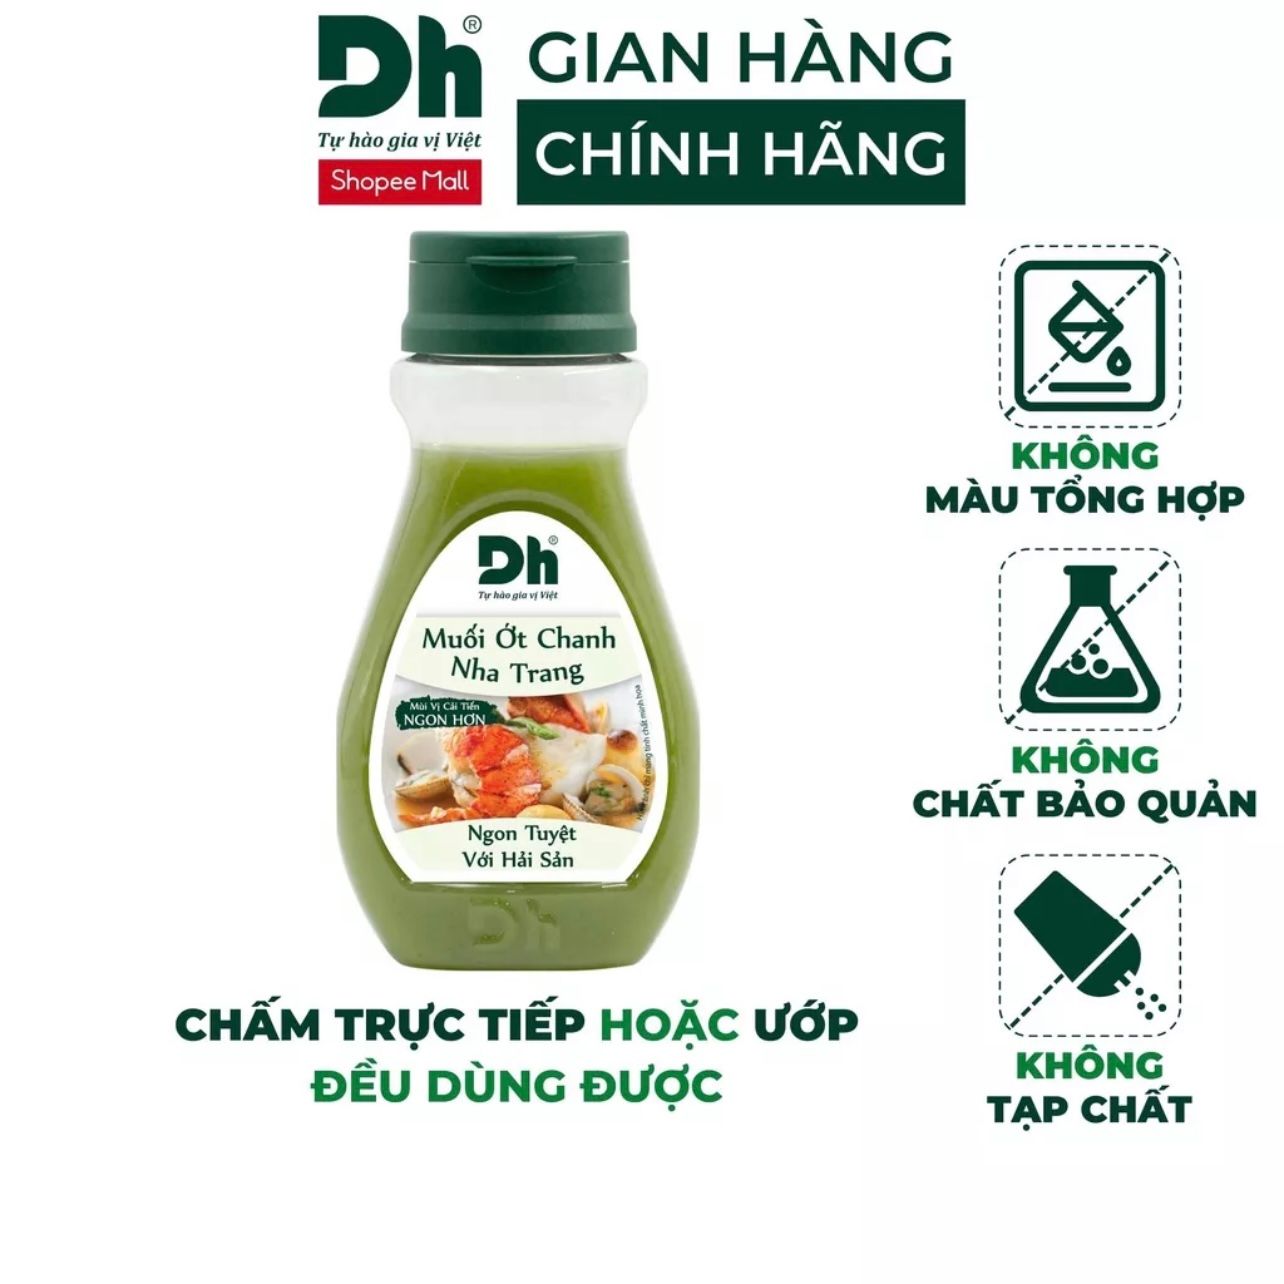  Muối ớt chanh Nha Trang 